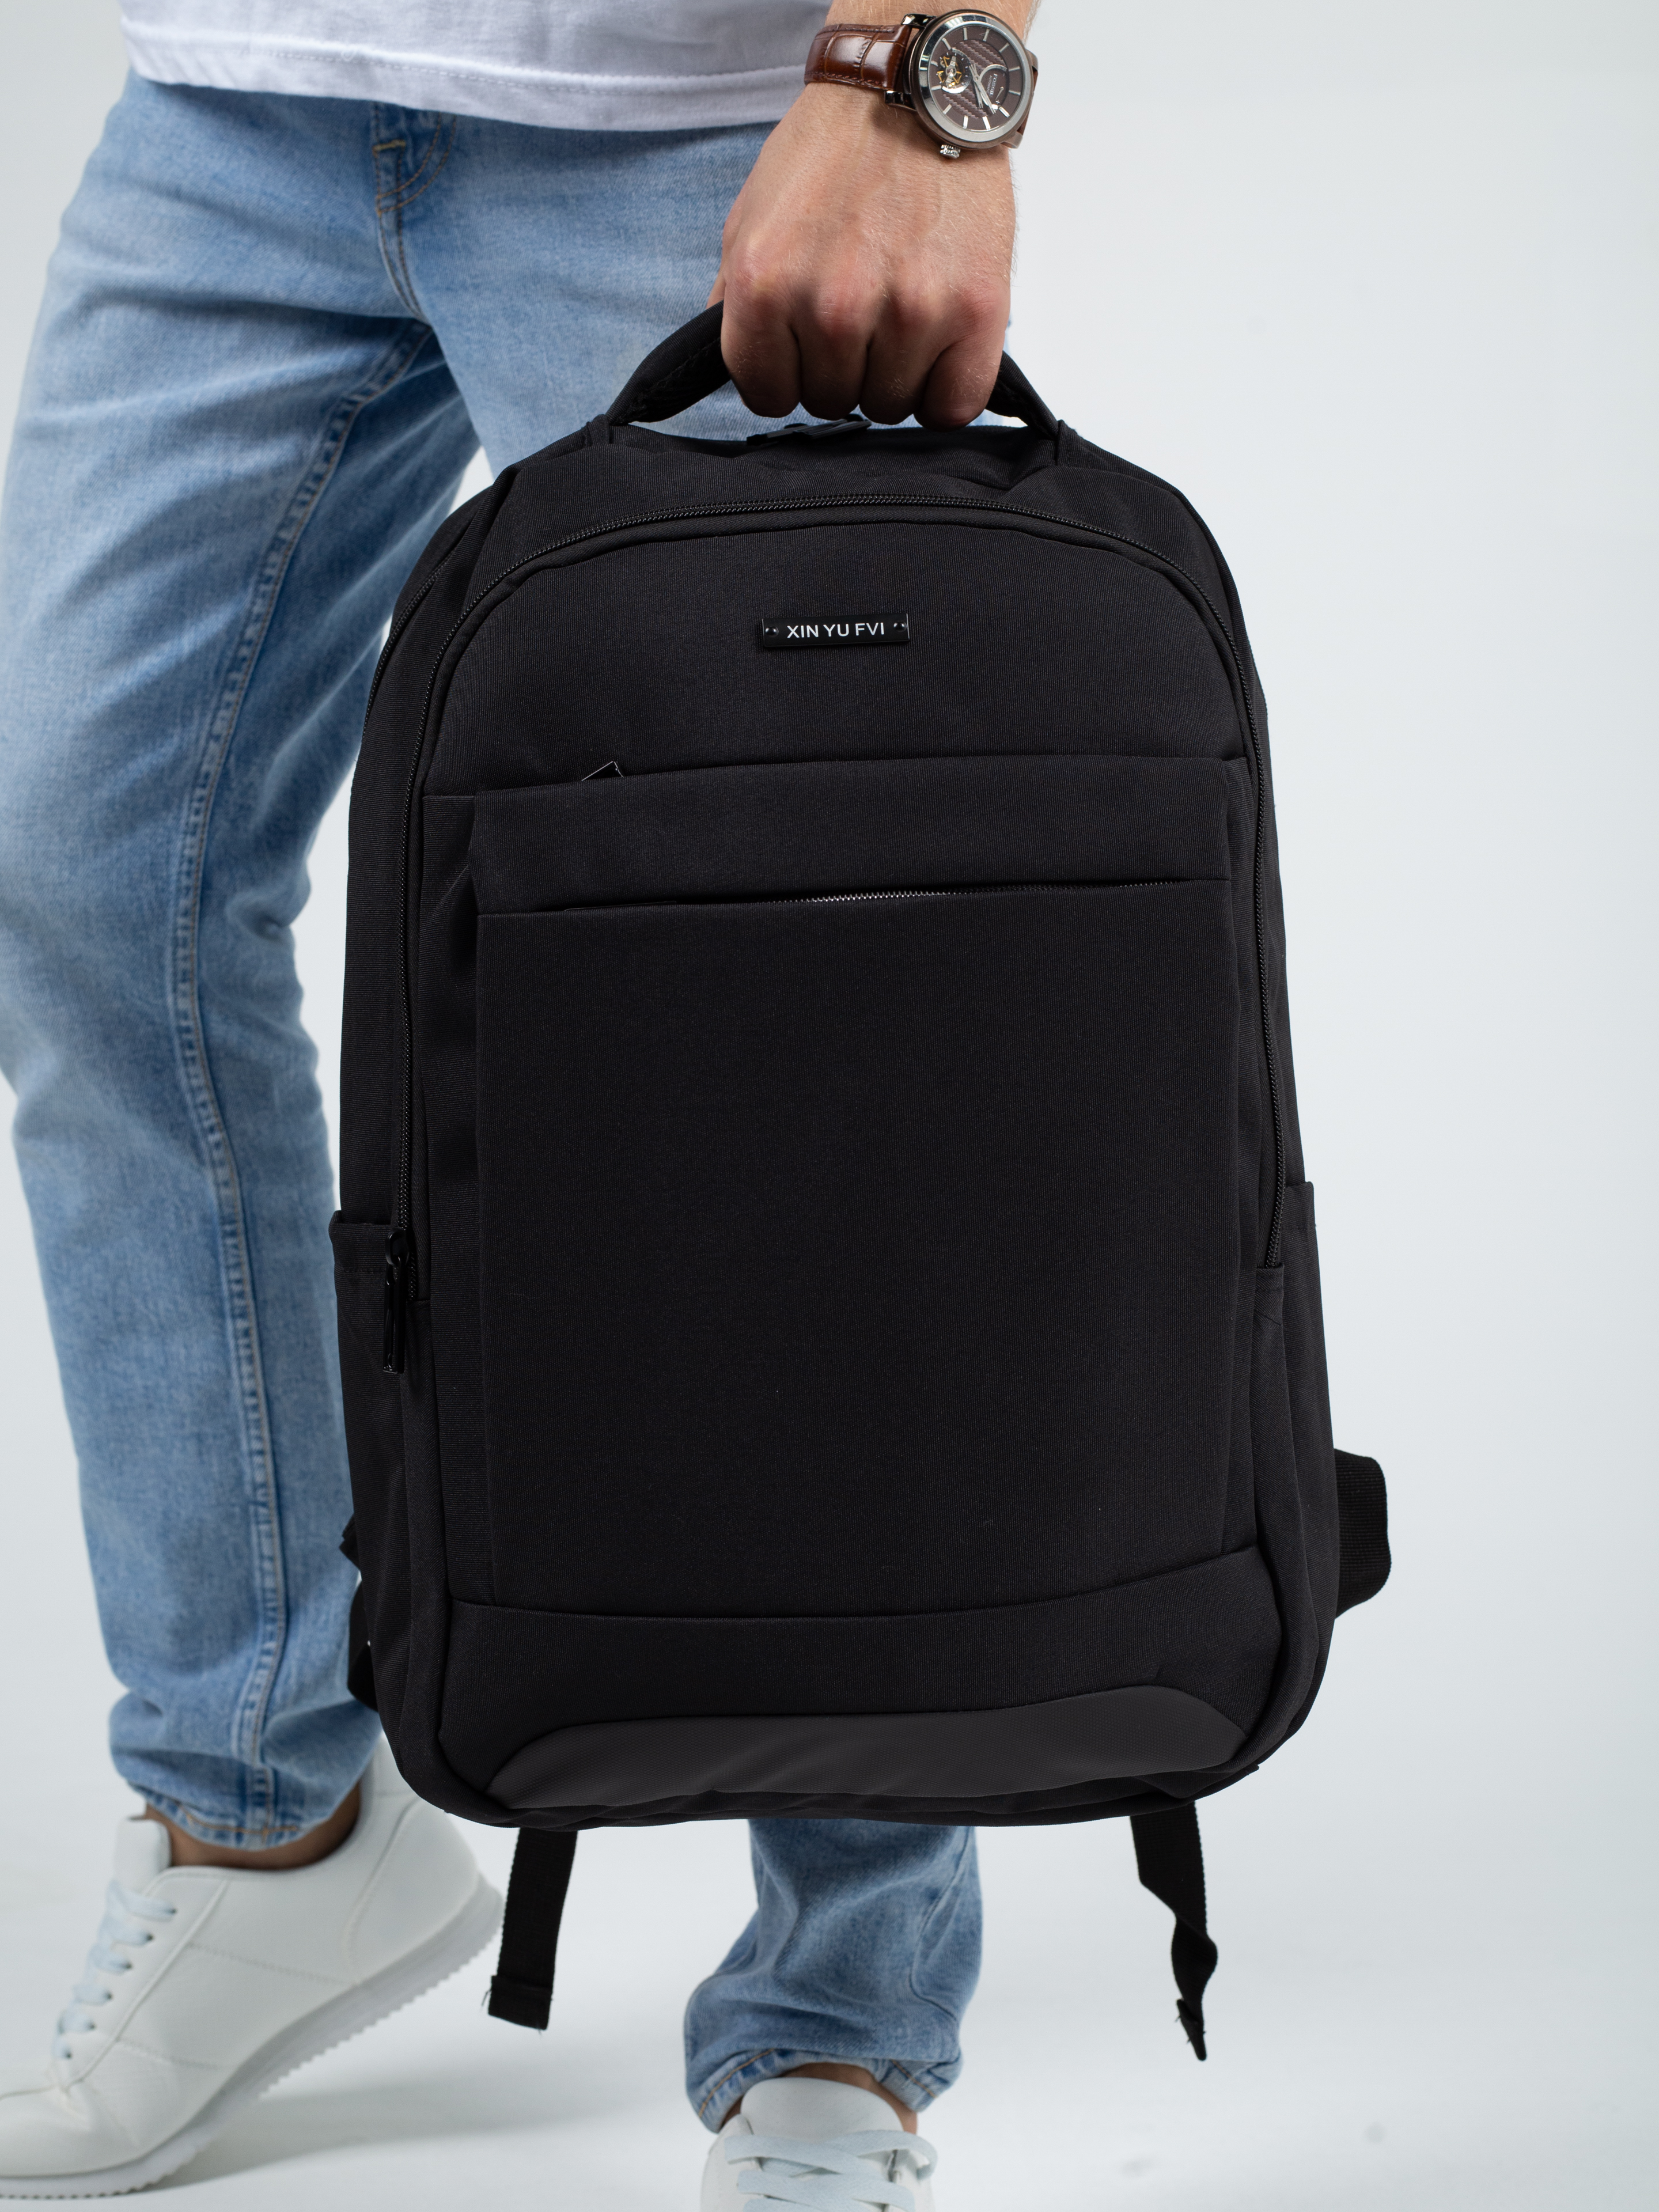 Рюкзак черный DUOYANG школьный подростковый для учебы и спорта - фото 1